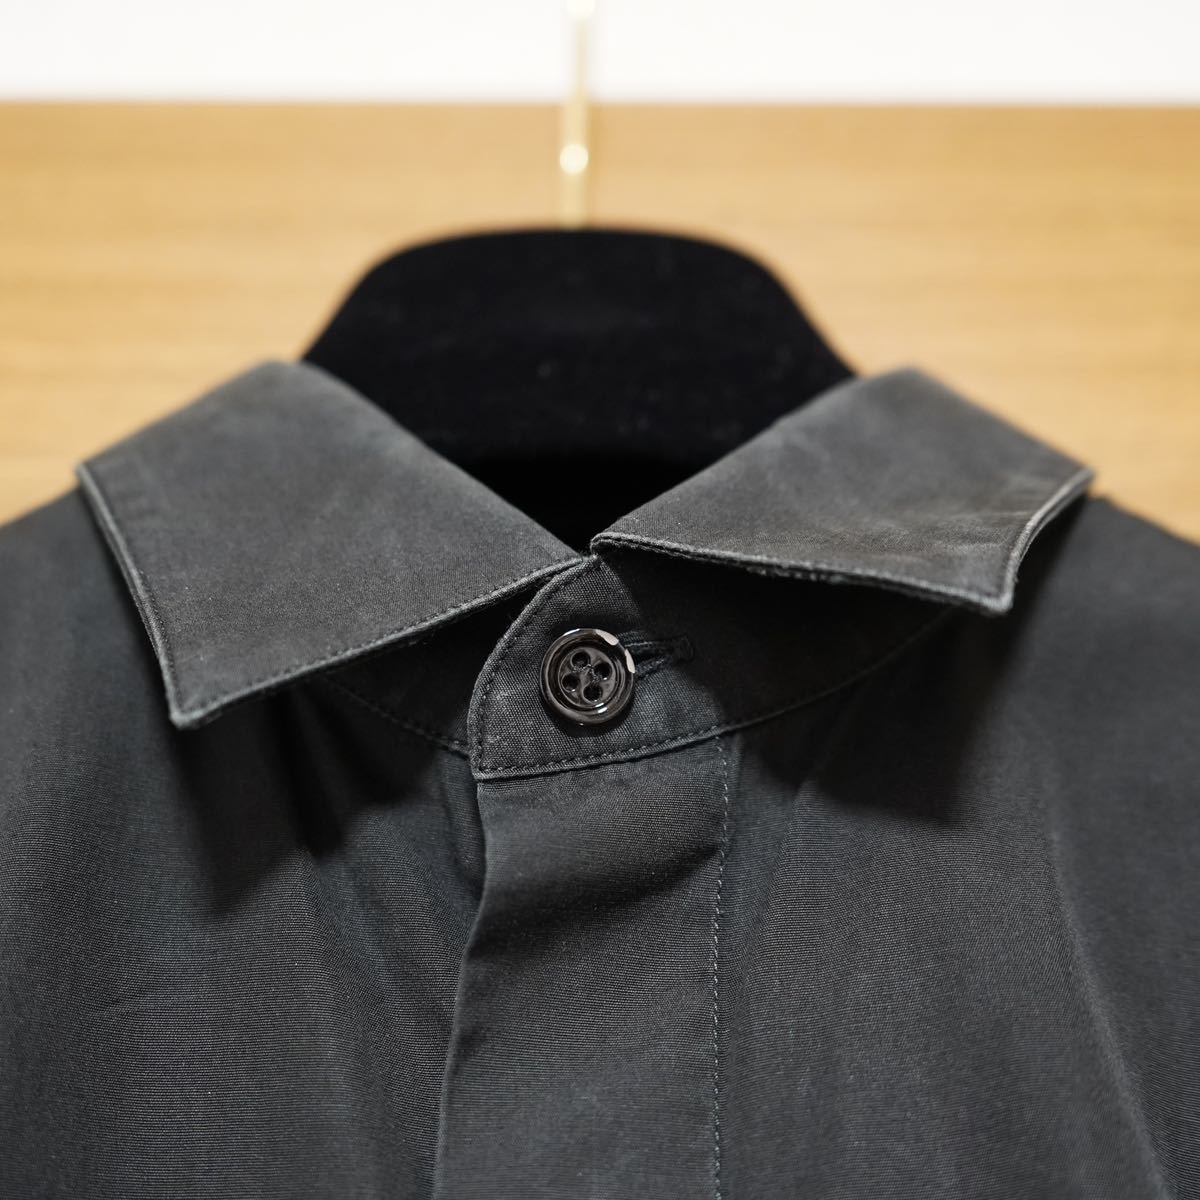 Dior】クリスチャンディオール オム 蜂 BEE 刺繍 カッターシャツ 黒シャツSHIRT 長袖シャツ